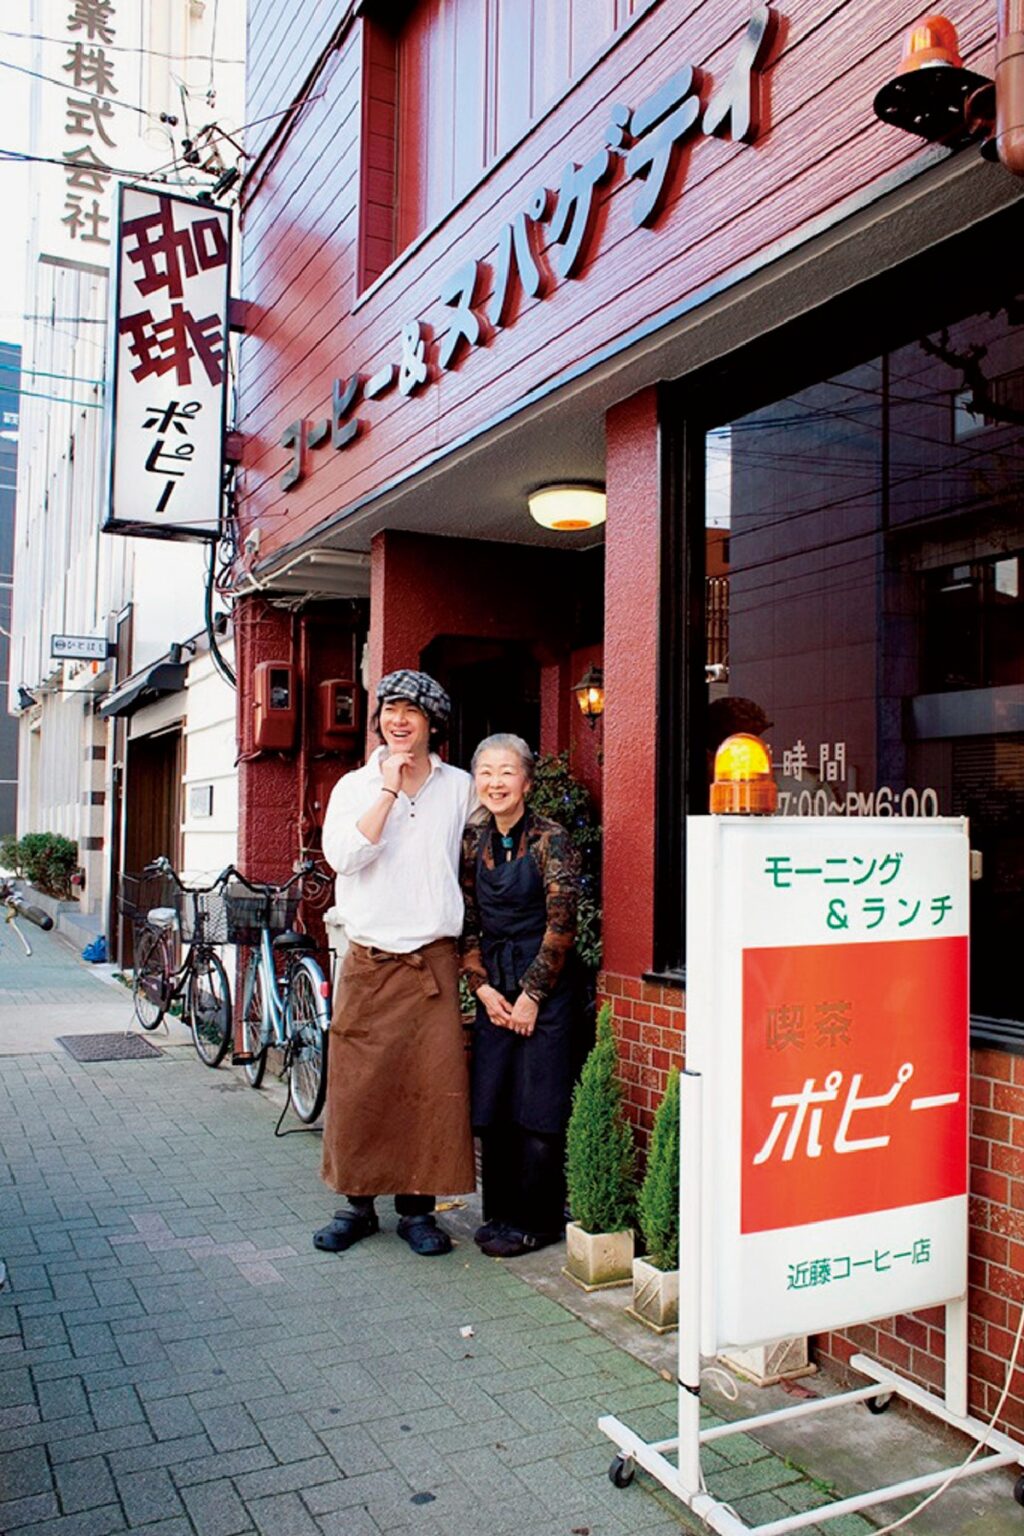 〈喫茶ポピー〉時代の尾藤さんと母。忙しいビジネスマンのためにスピーディなサービスを届ける昔ながらの喫茶店だった。この頃のコーヒー豆は業者か3ら仕入れて使っていた。